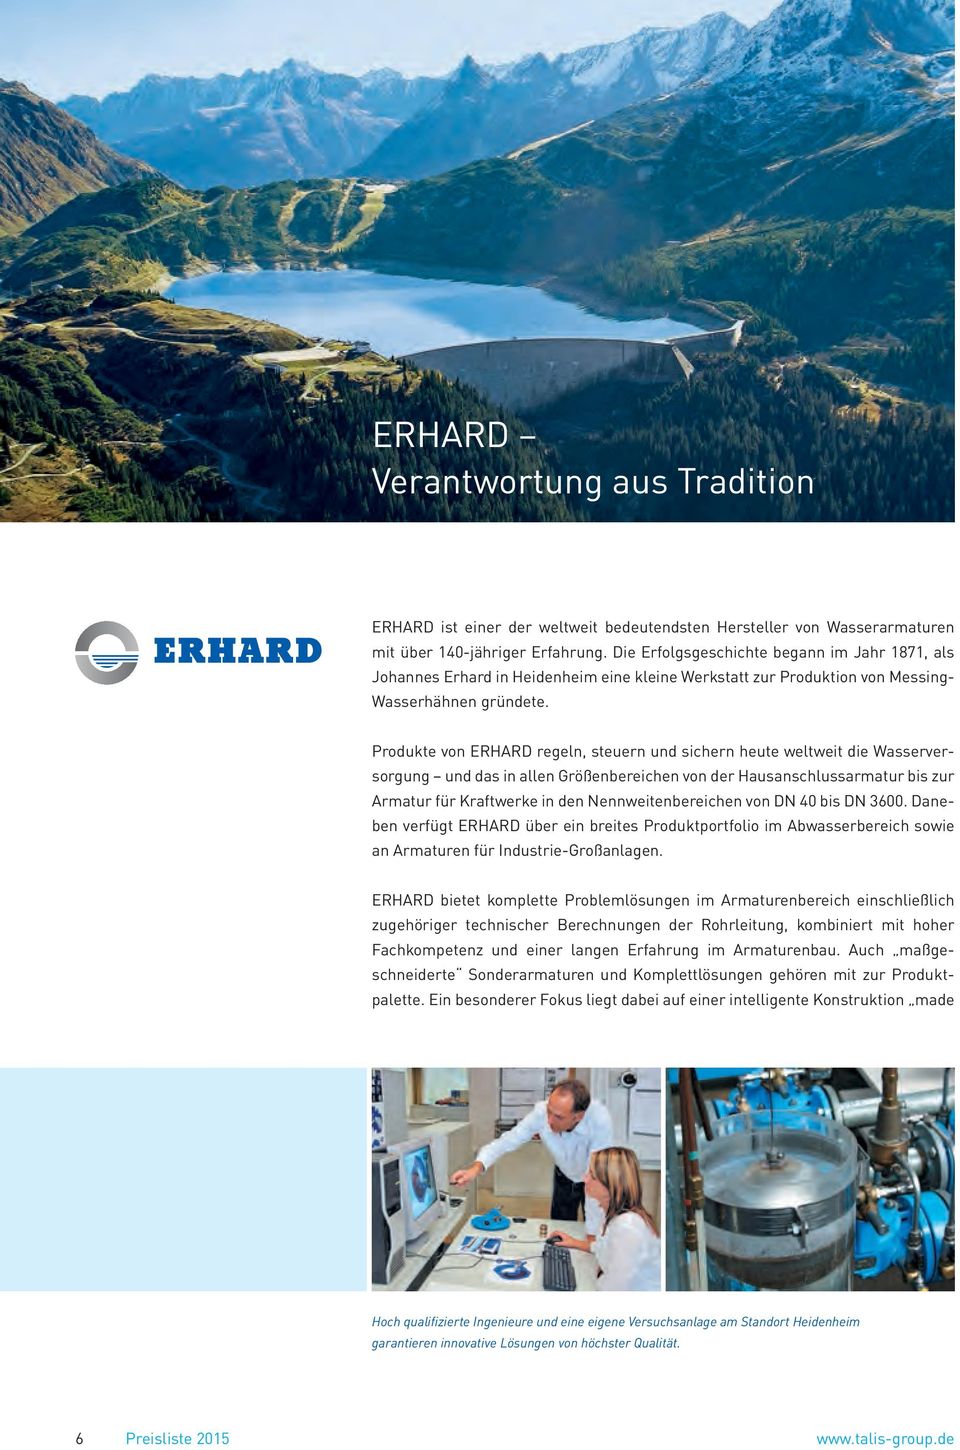 Produkte von ERHARD regeln, steuern und sichern heute weltweit die Wasserversorgung und das in allen Größenbereichen von der Hausanschlussarmatur bis zur Armatur für Kraftwerke in den